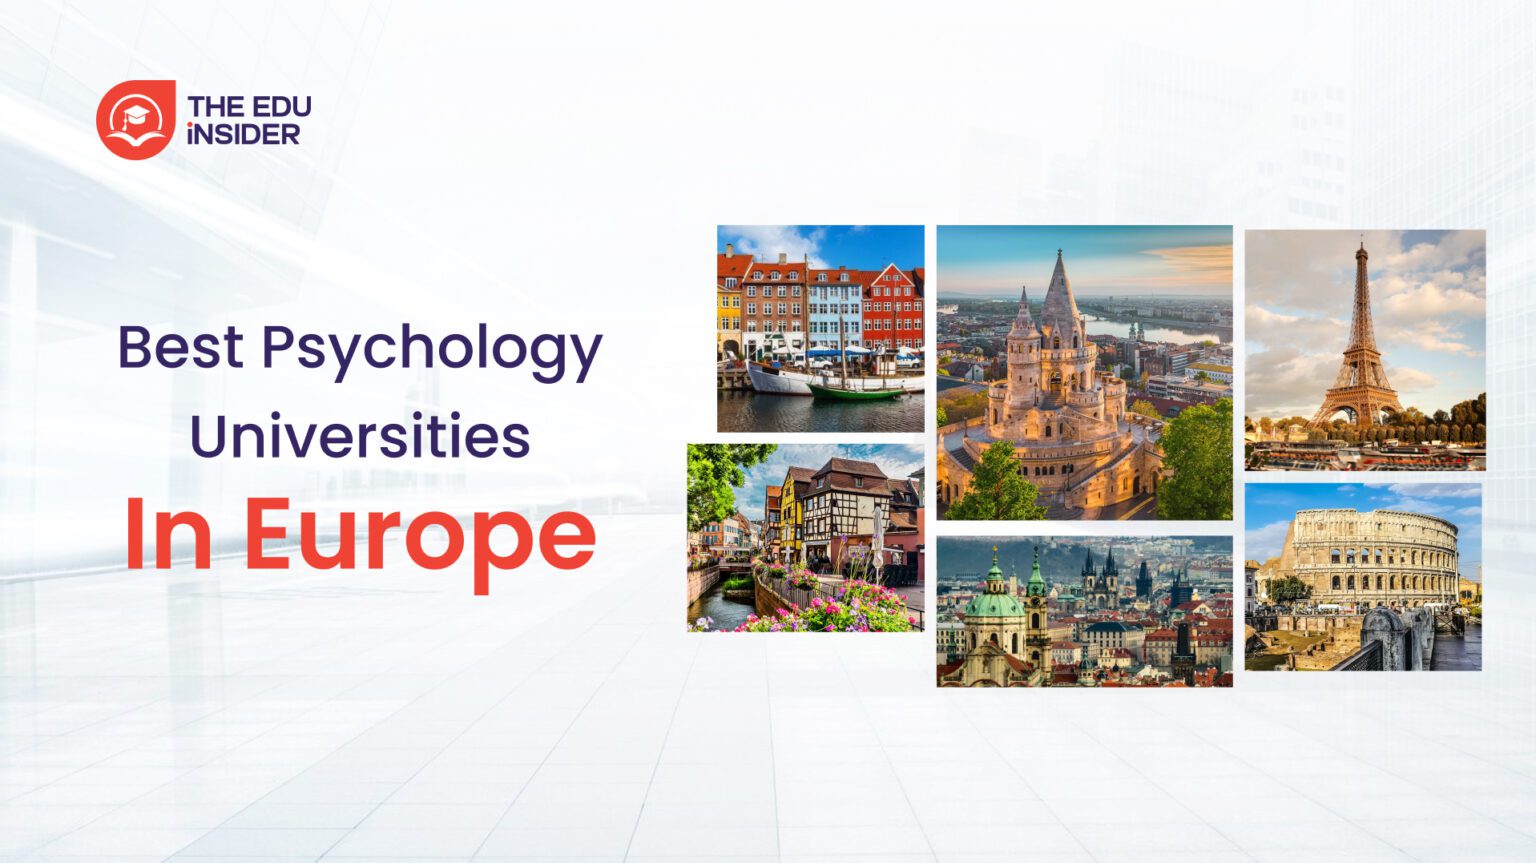 Best Psychology Universities in Europe